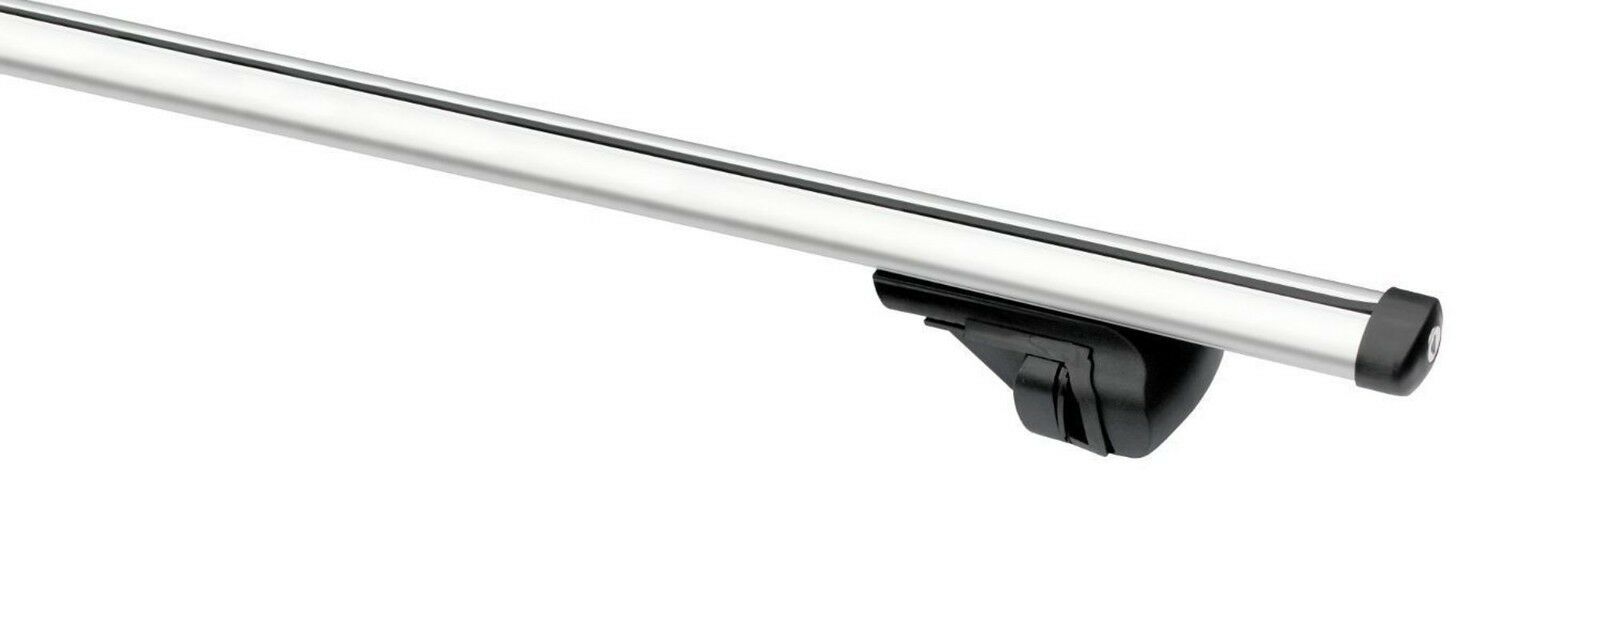 Cross Bars Roof Rack Aluminium Locking Fits Volvo Xc90 2002-2013 Estate